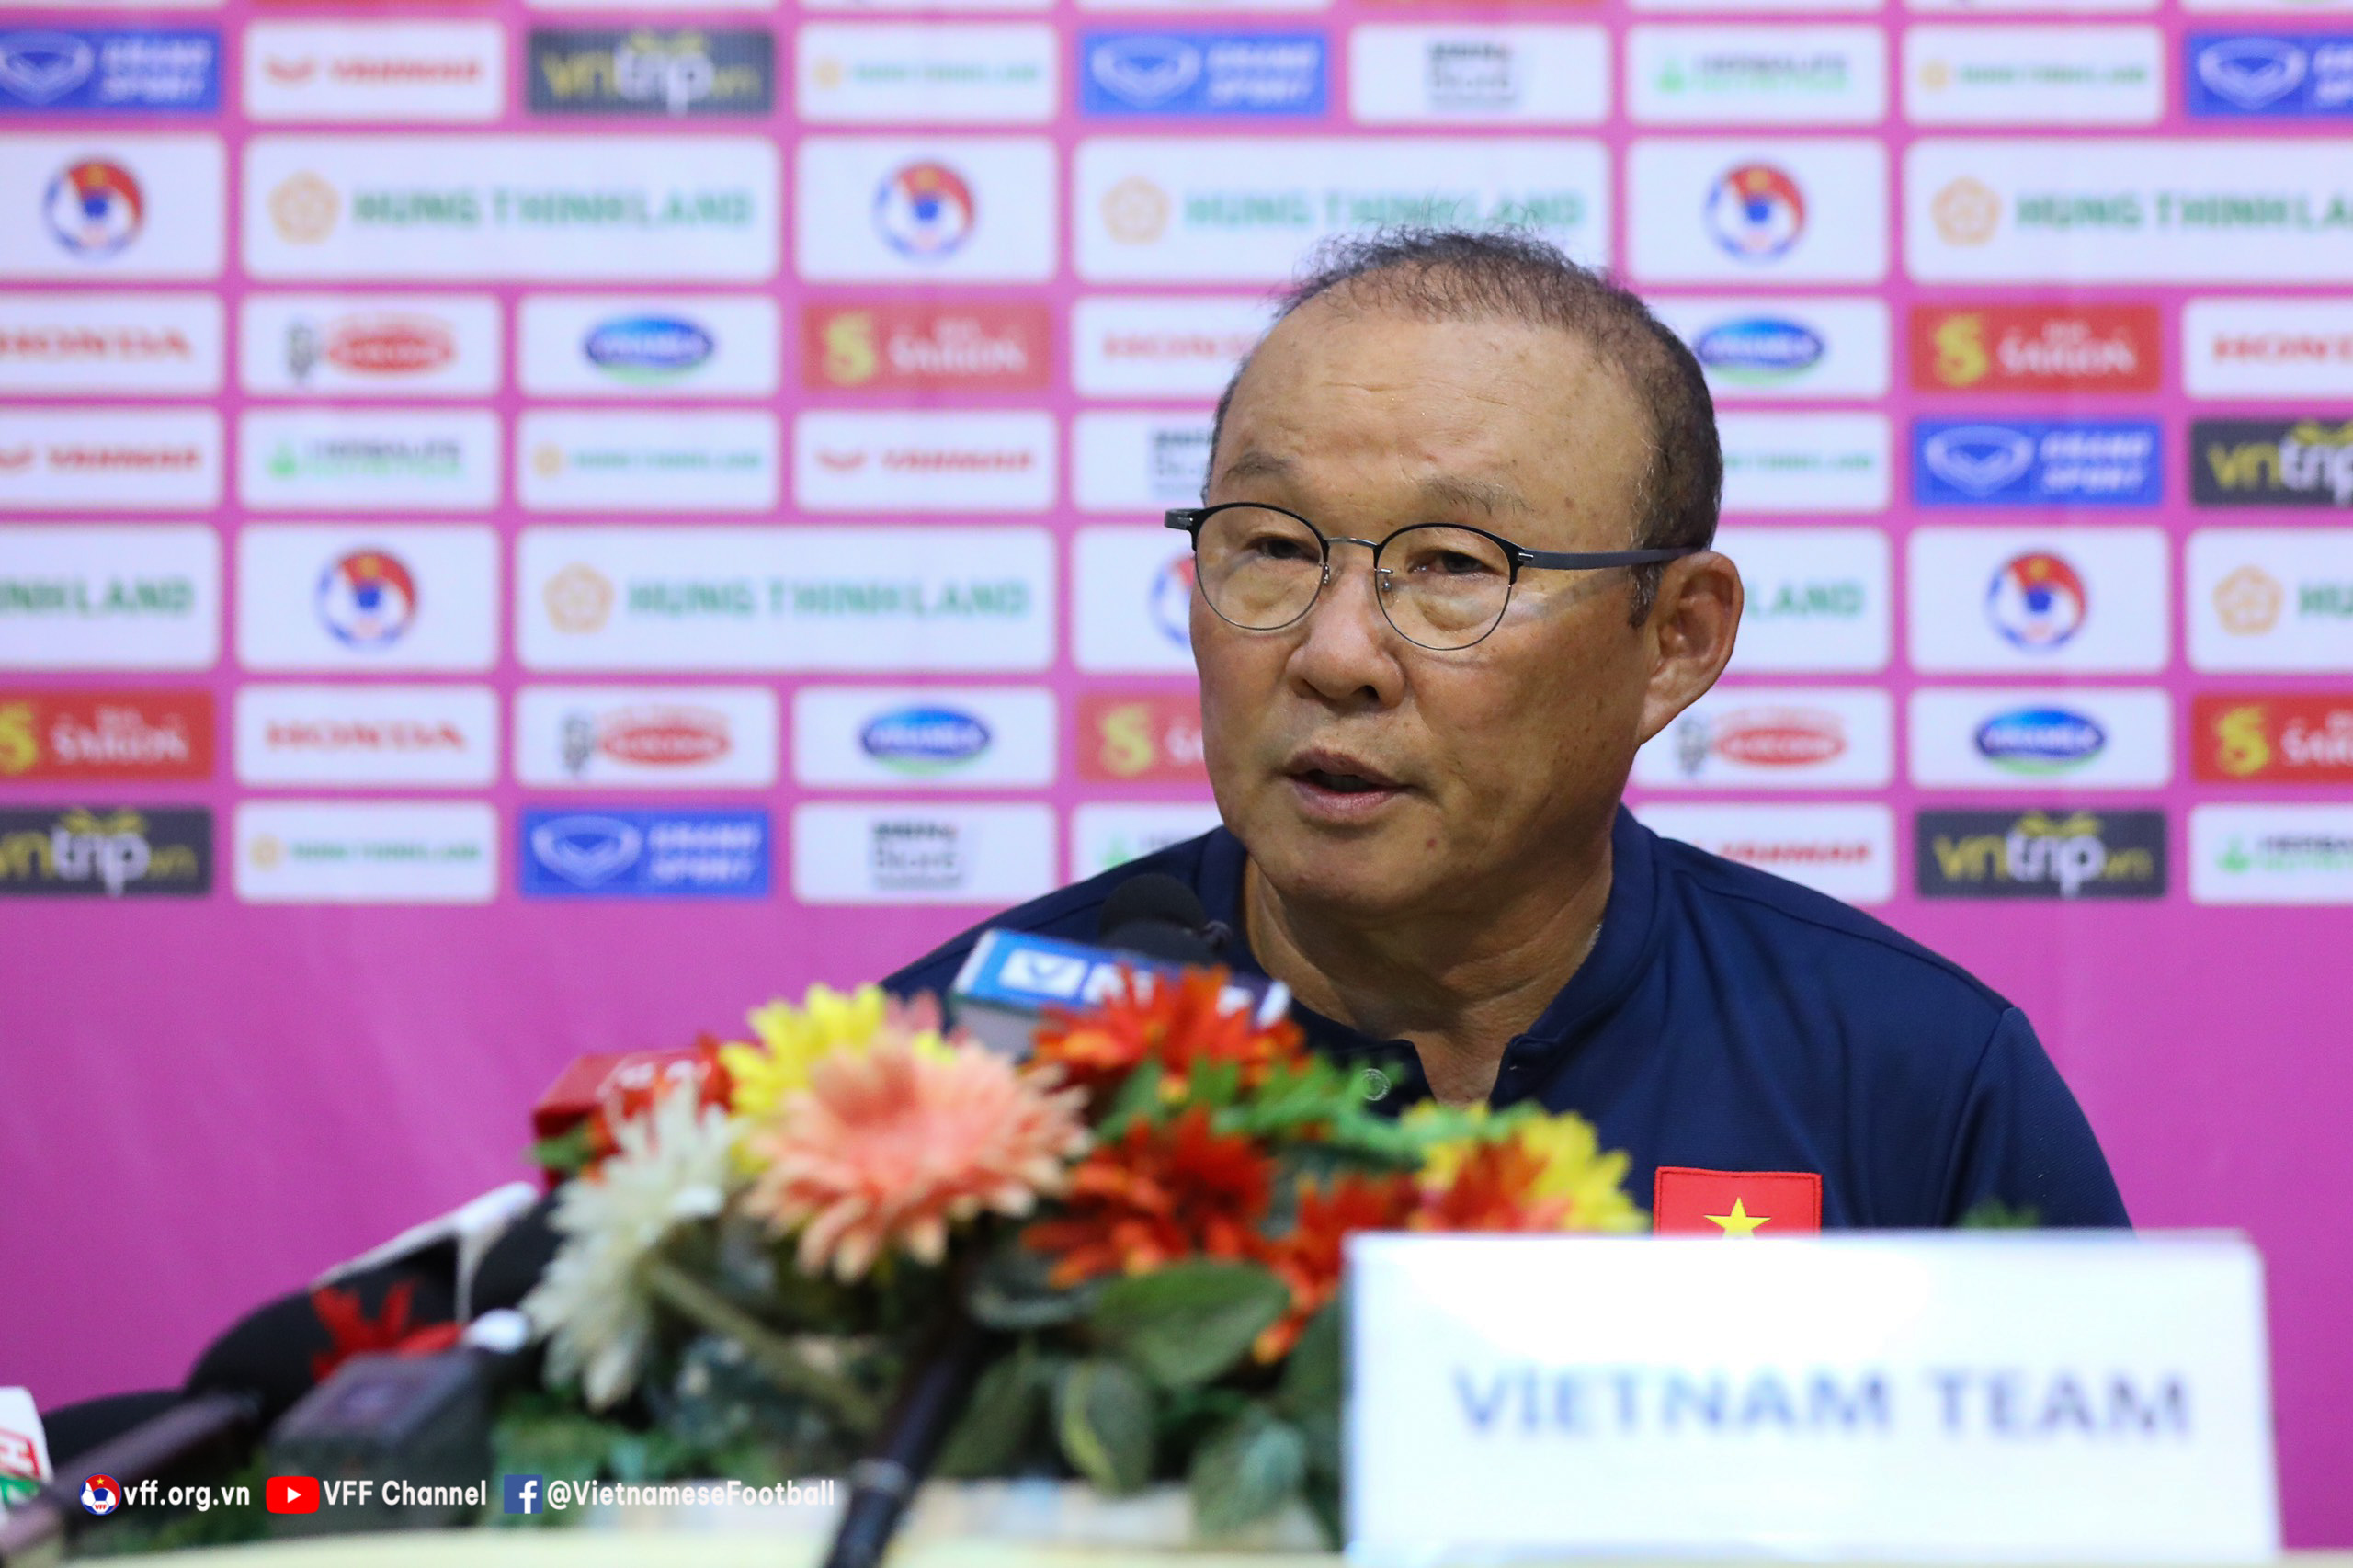 Tin nóng bóng đá Việt 29/6: Huỳnh Như trở lại, HLV Park Hang Seo cân nhắc hợp đồng với đội tuyển Ấn Độ - Ảnh 1.